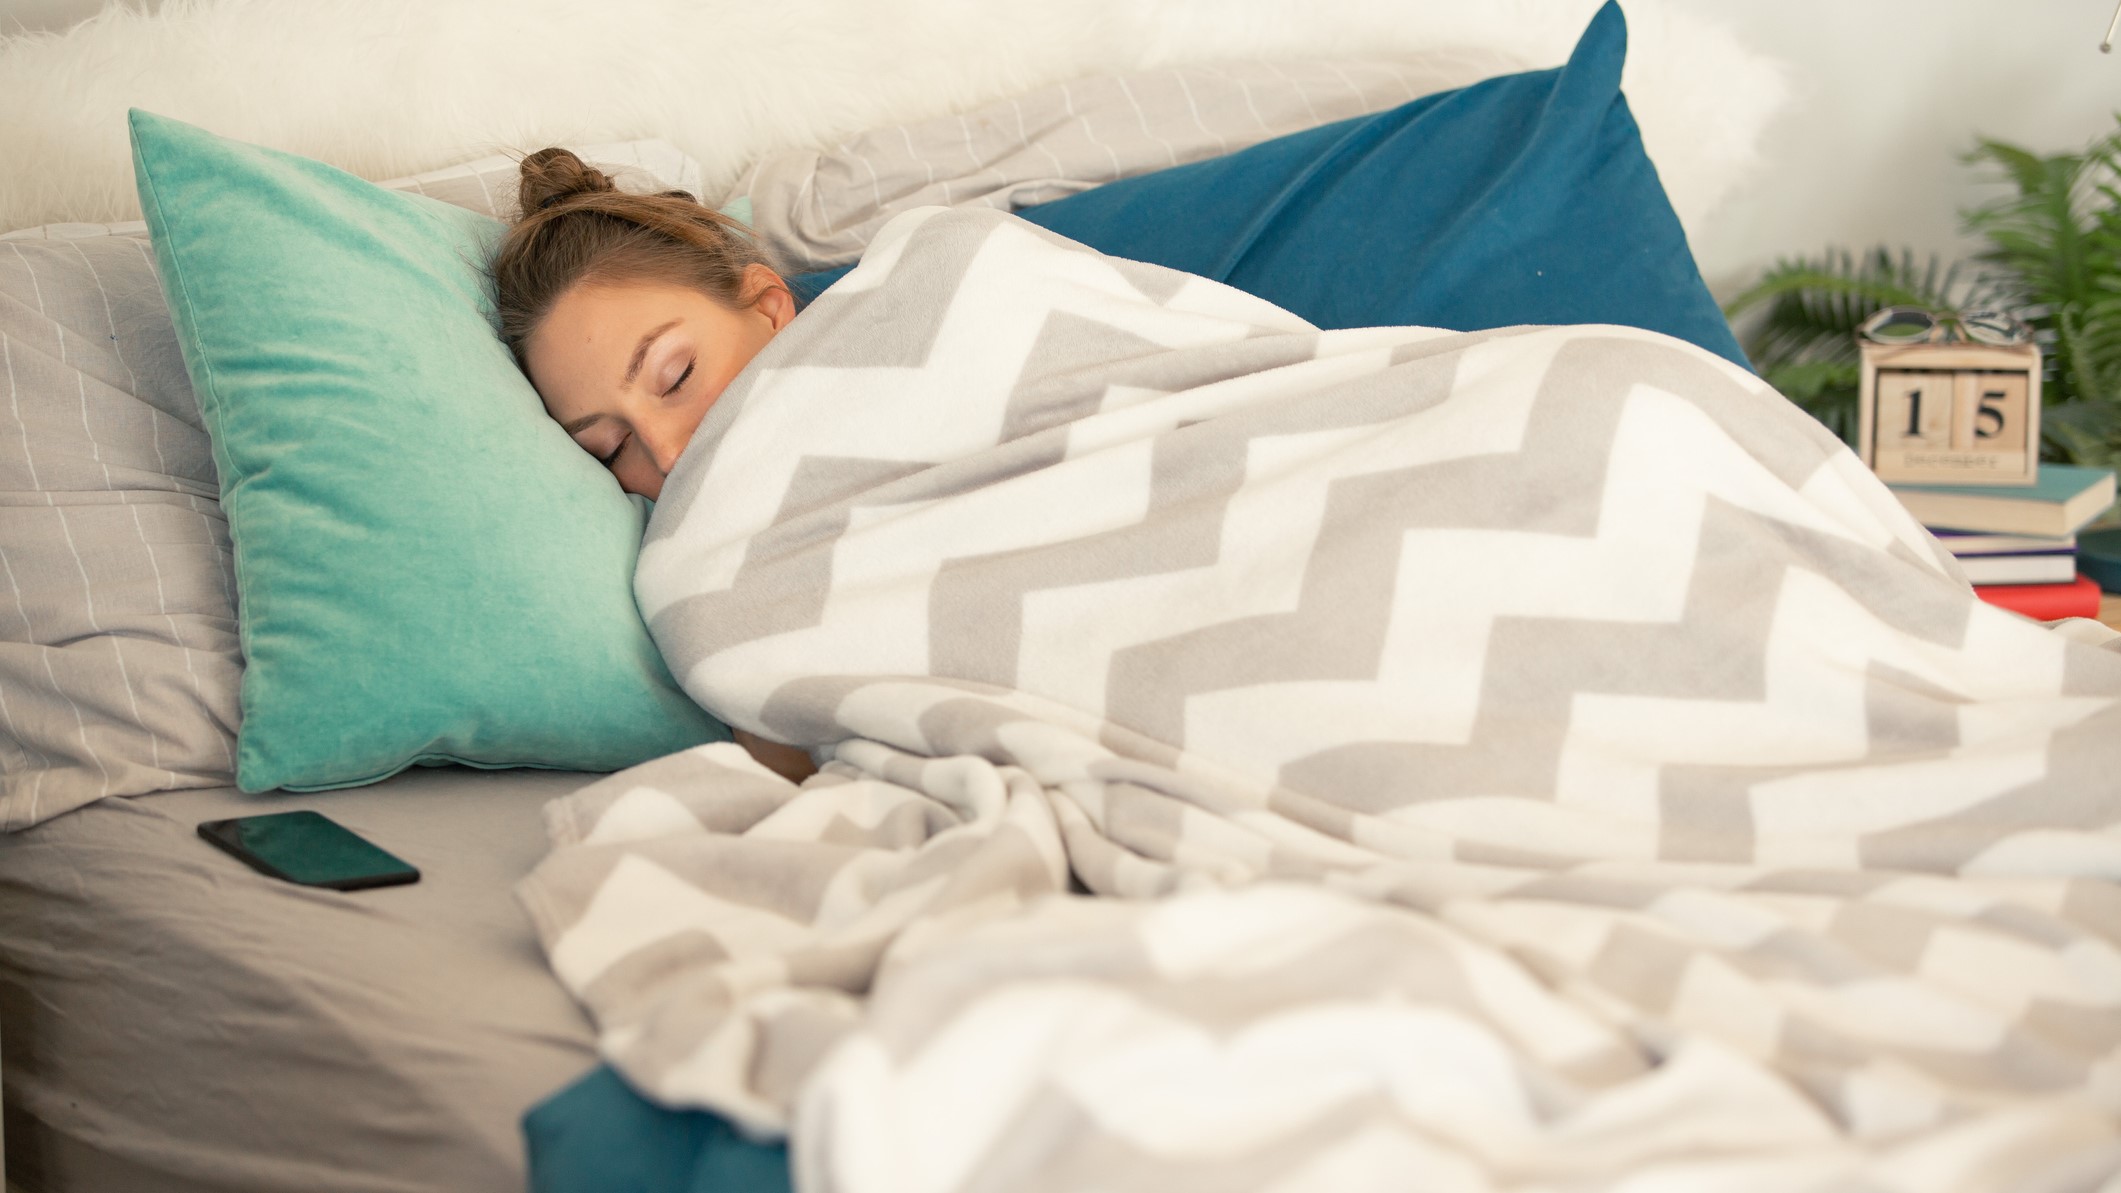 Una chica tumbada en la cama y arropada con mantas.